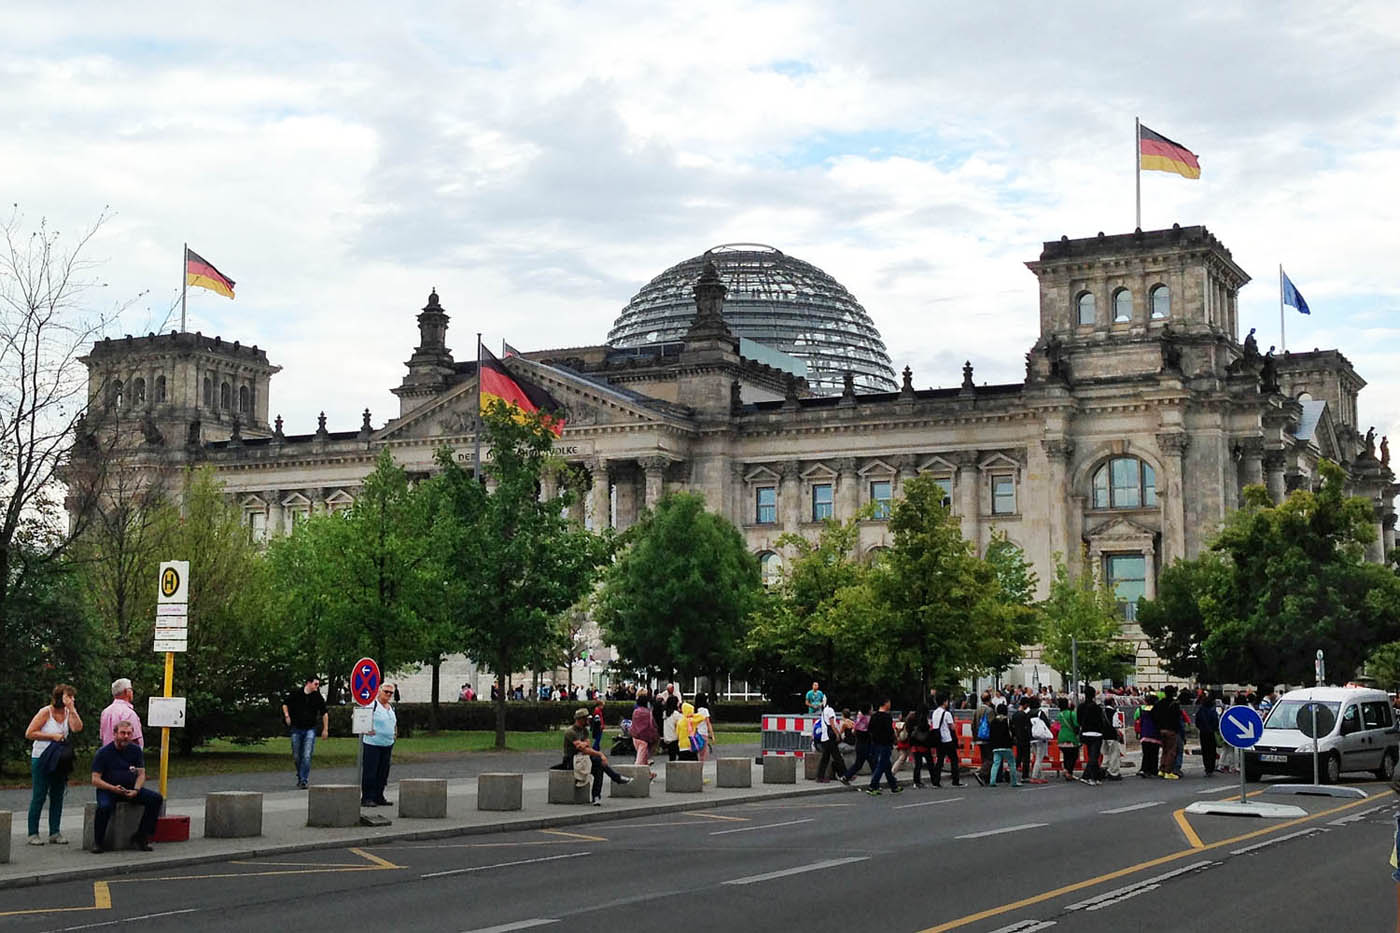 Основная туристическая программа в Берлине - знаменитые Бранденбургские ворота и Рейхстаг.